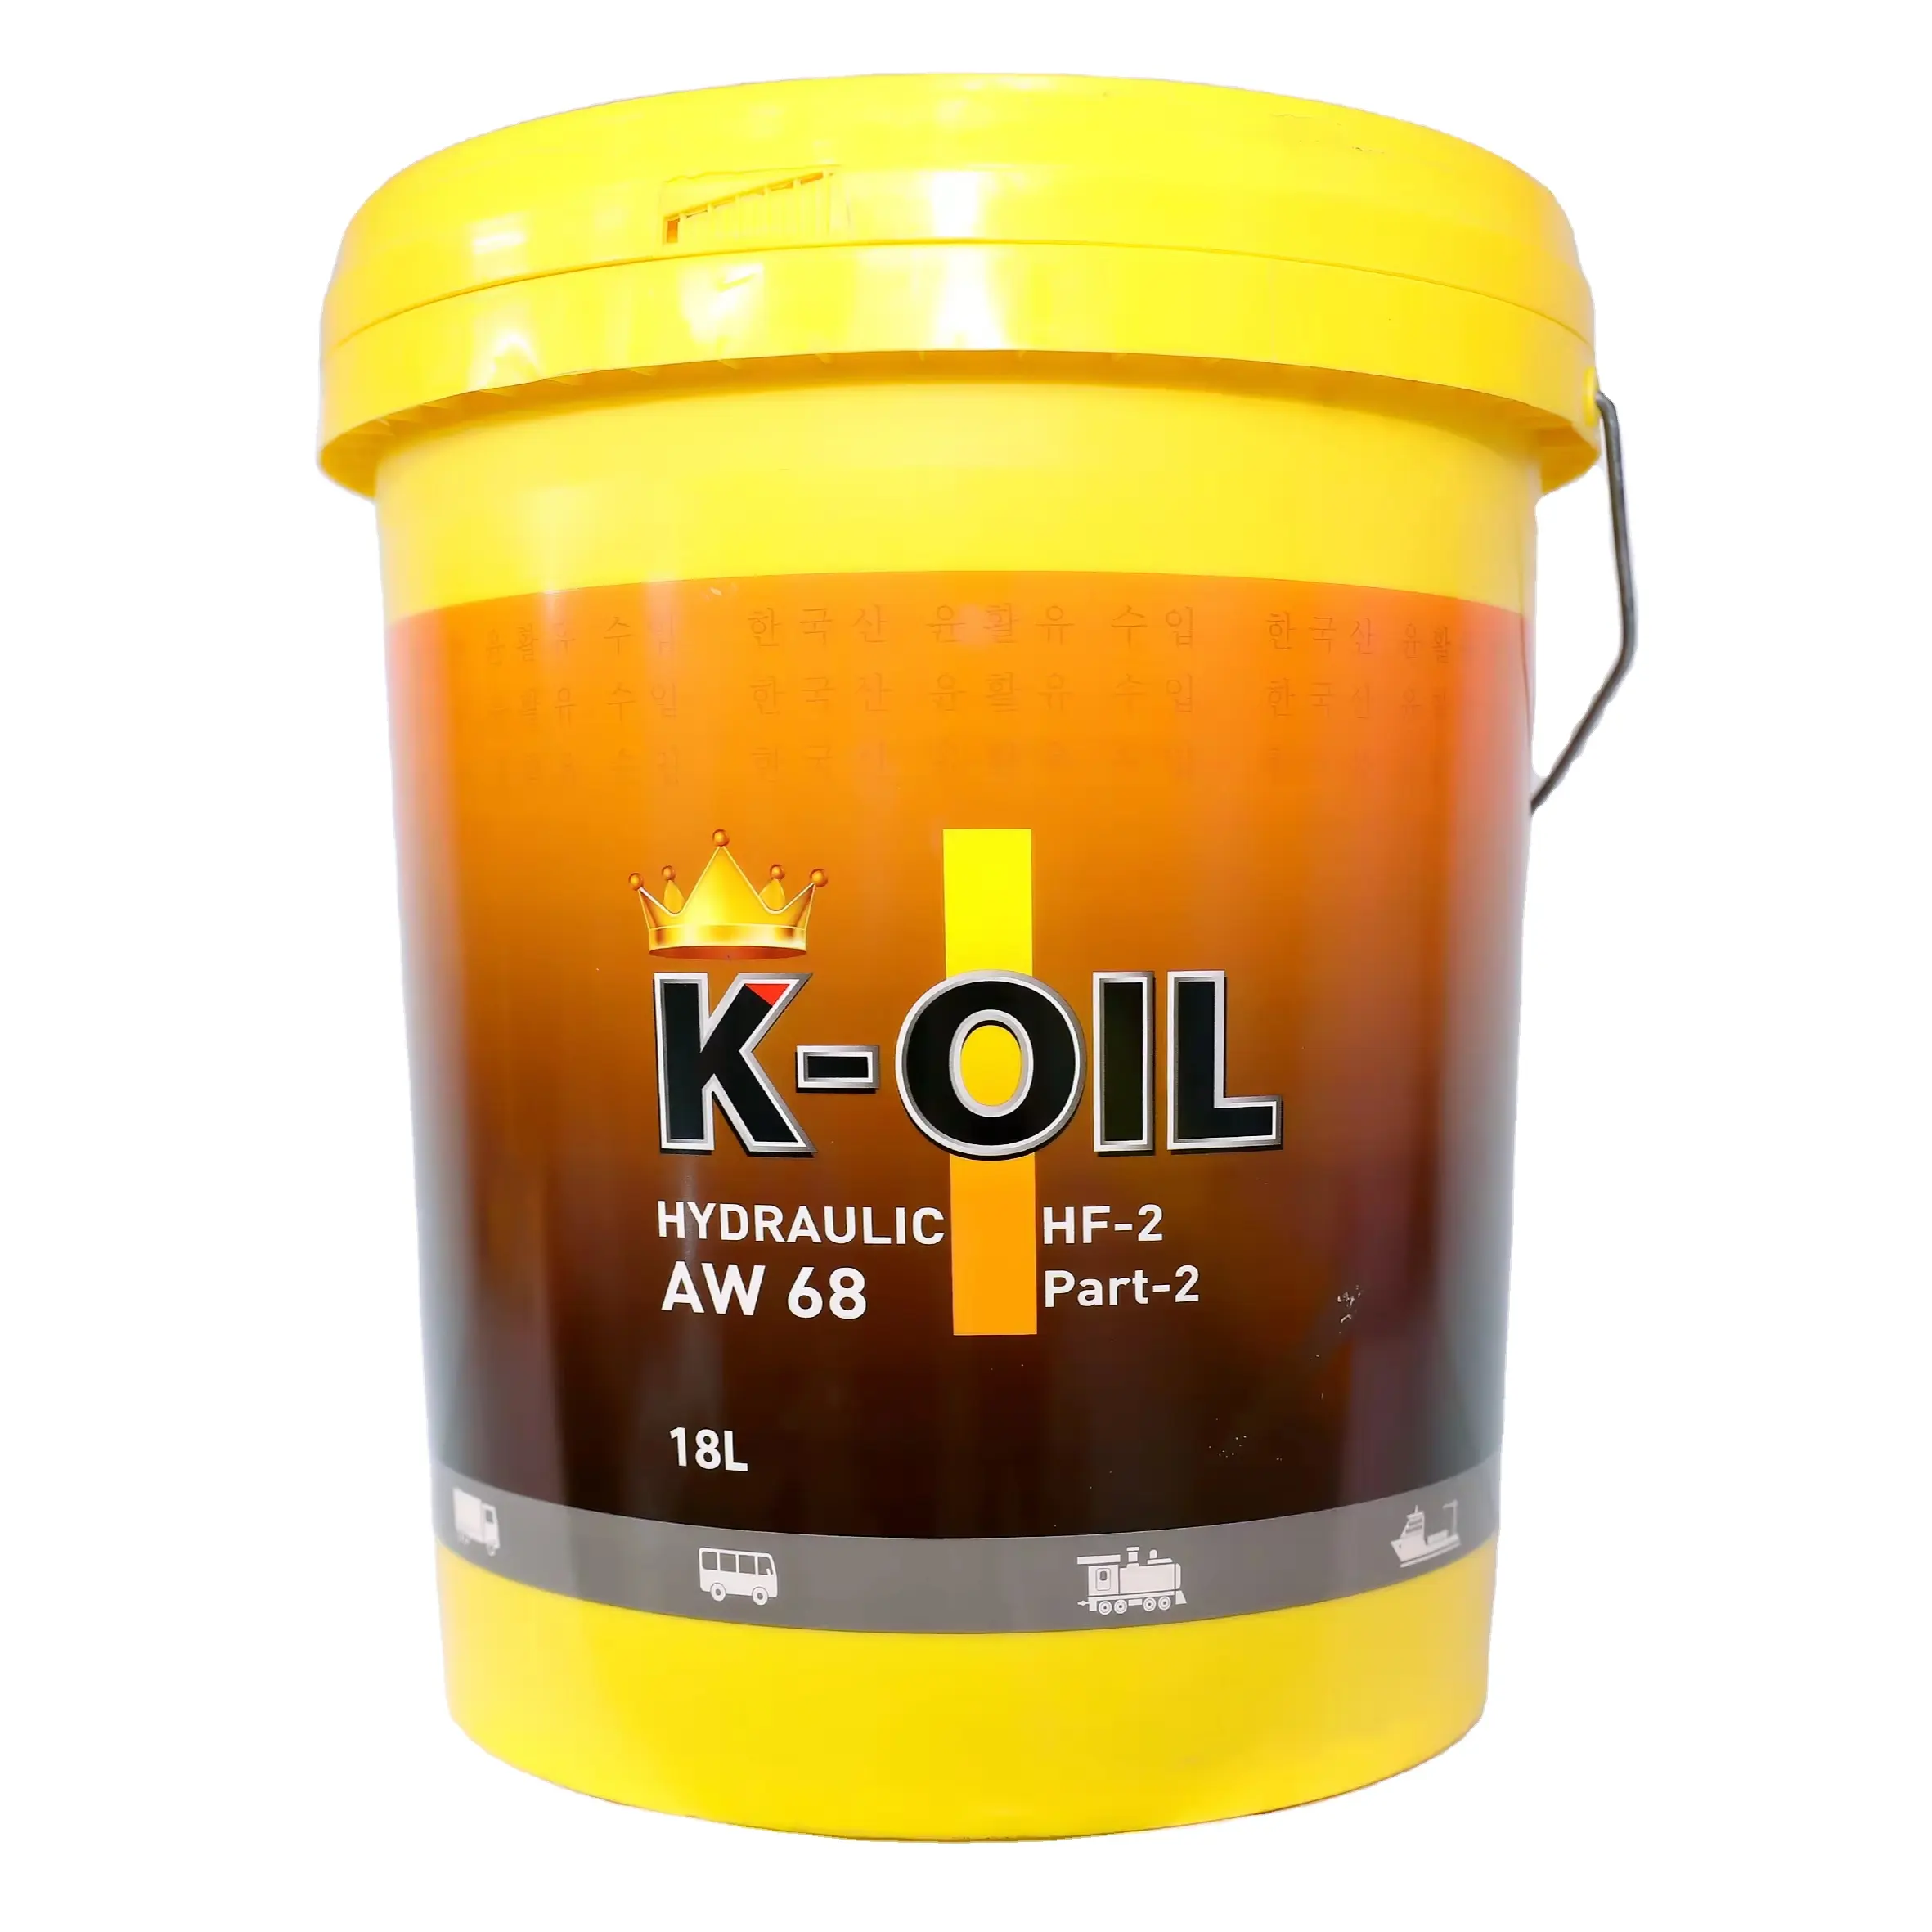 K-oil hidráulico AW68 aceite de transmisión mejor protección del motor y lubricante de precio barato para trenes, barcos Vietnam